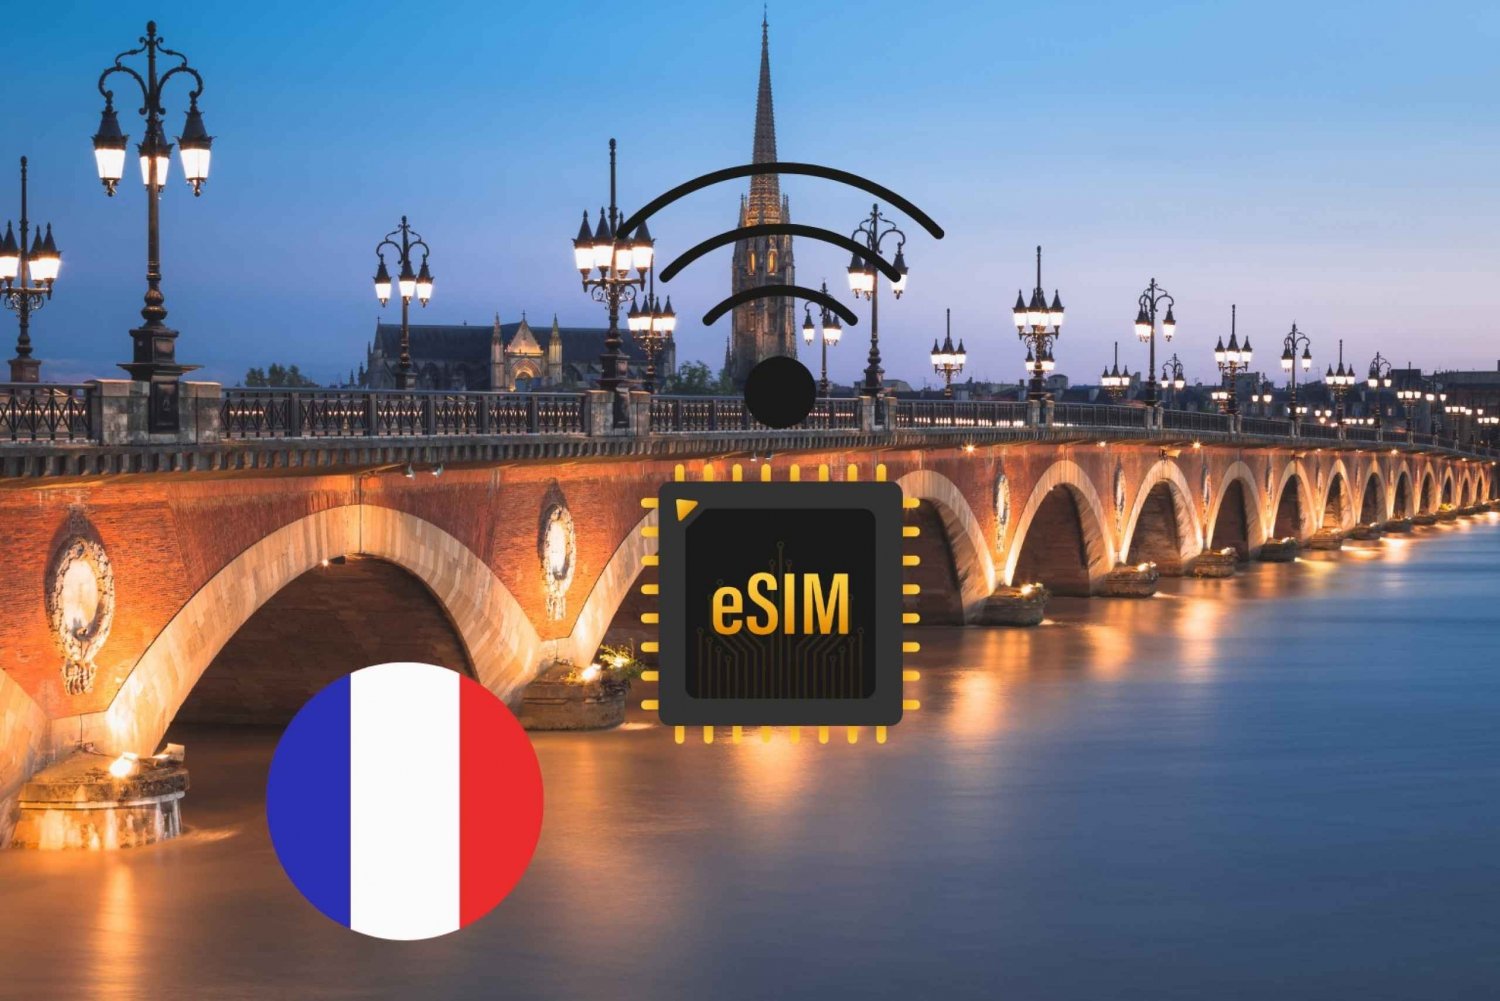 Burdeos : eSIM Internet Plan de datos Francia alta velocidad 5G/4G